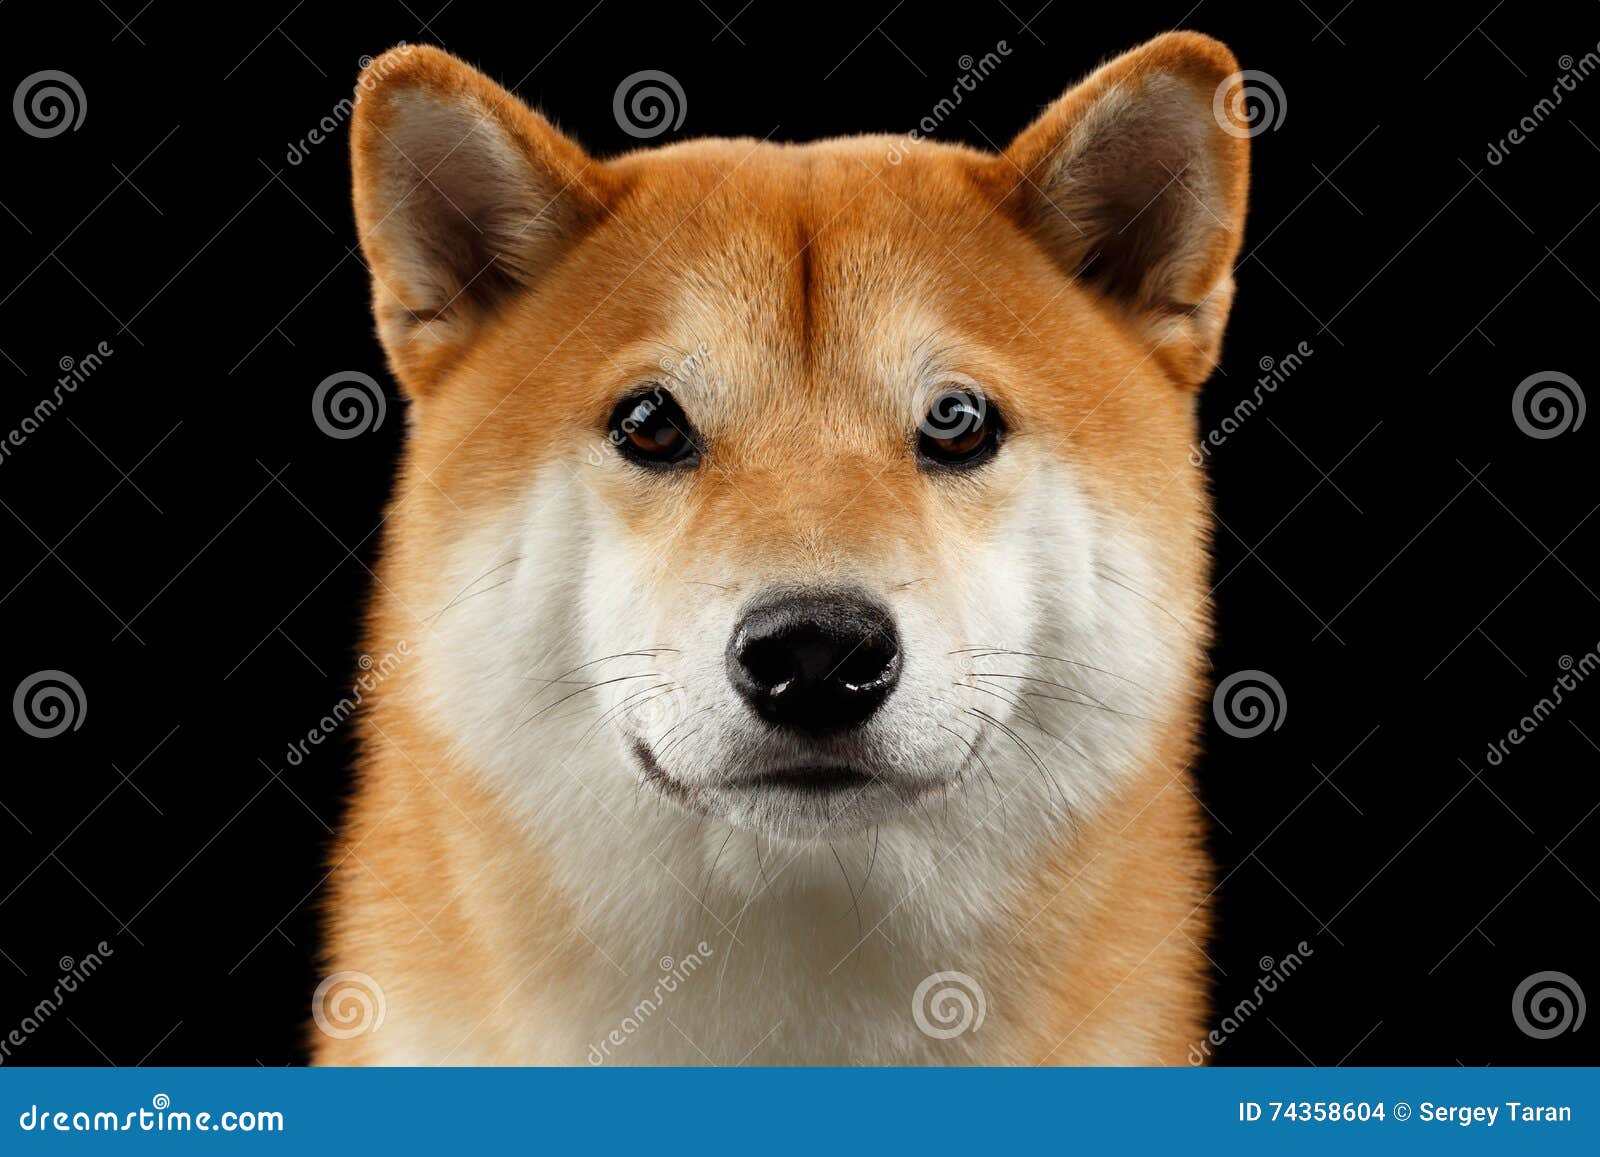 Close Up Portrait Of Head Shiba Inu Dog Black Background Stock Photo Image Of Mammal Eyes 74358604